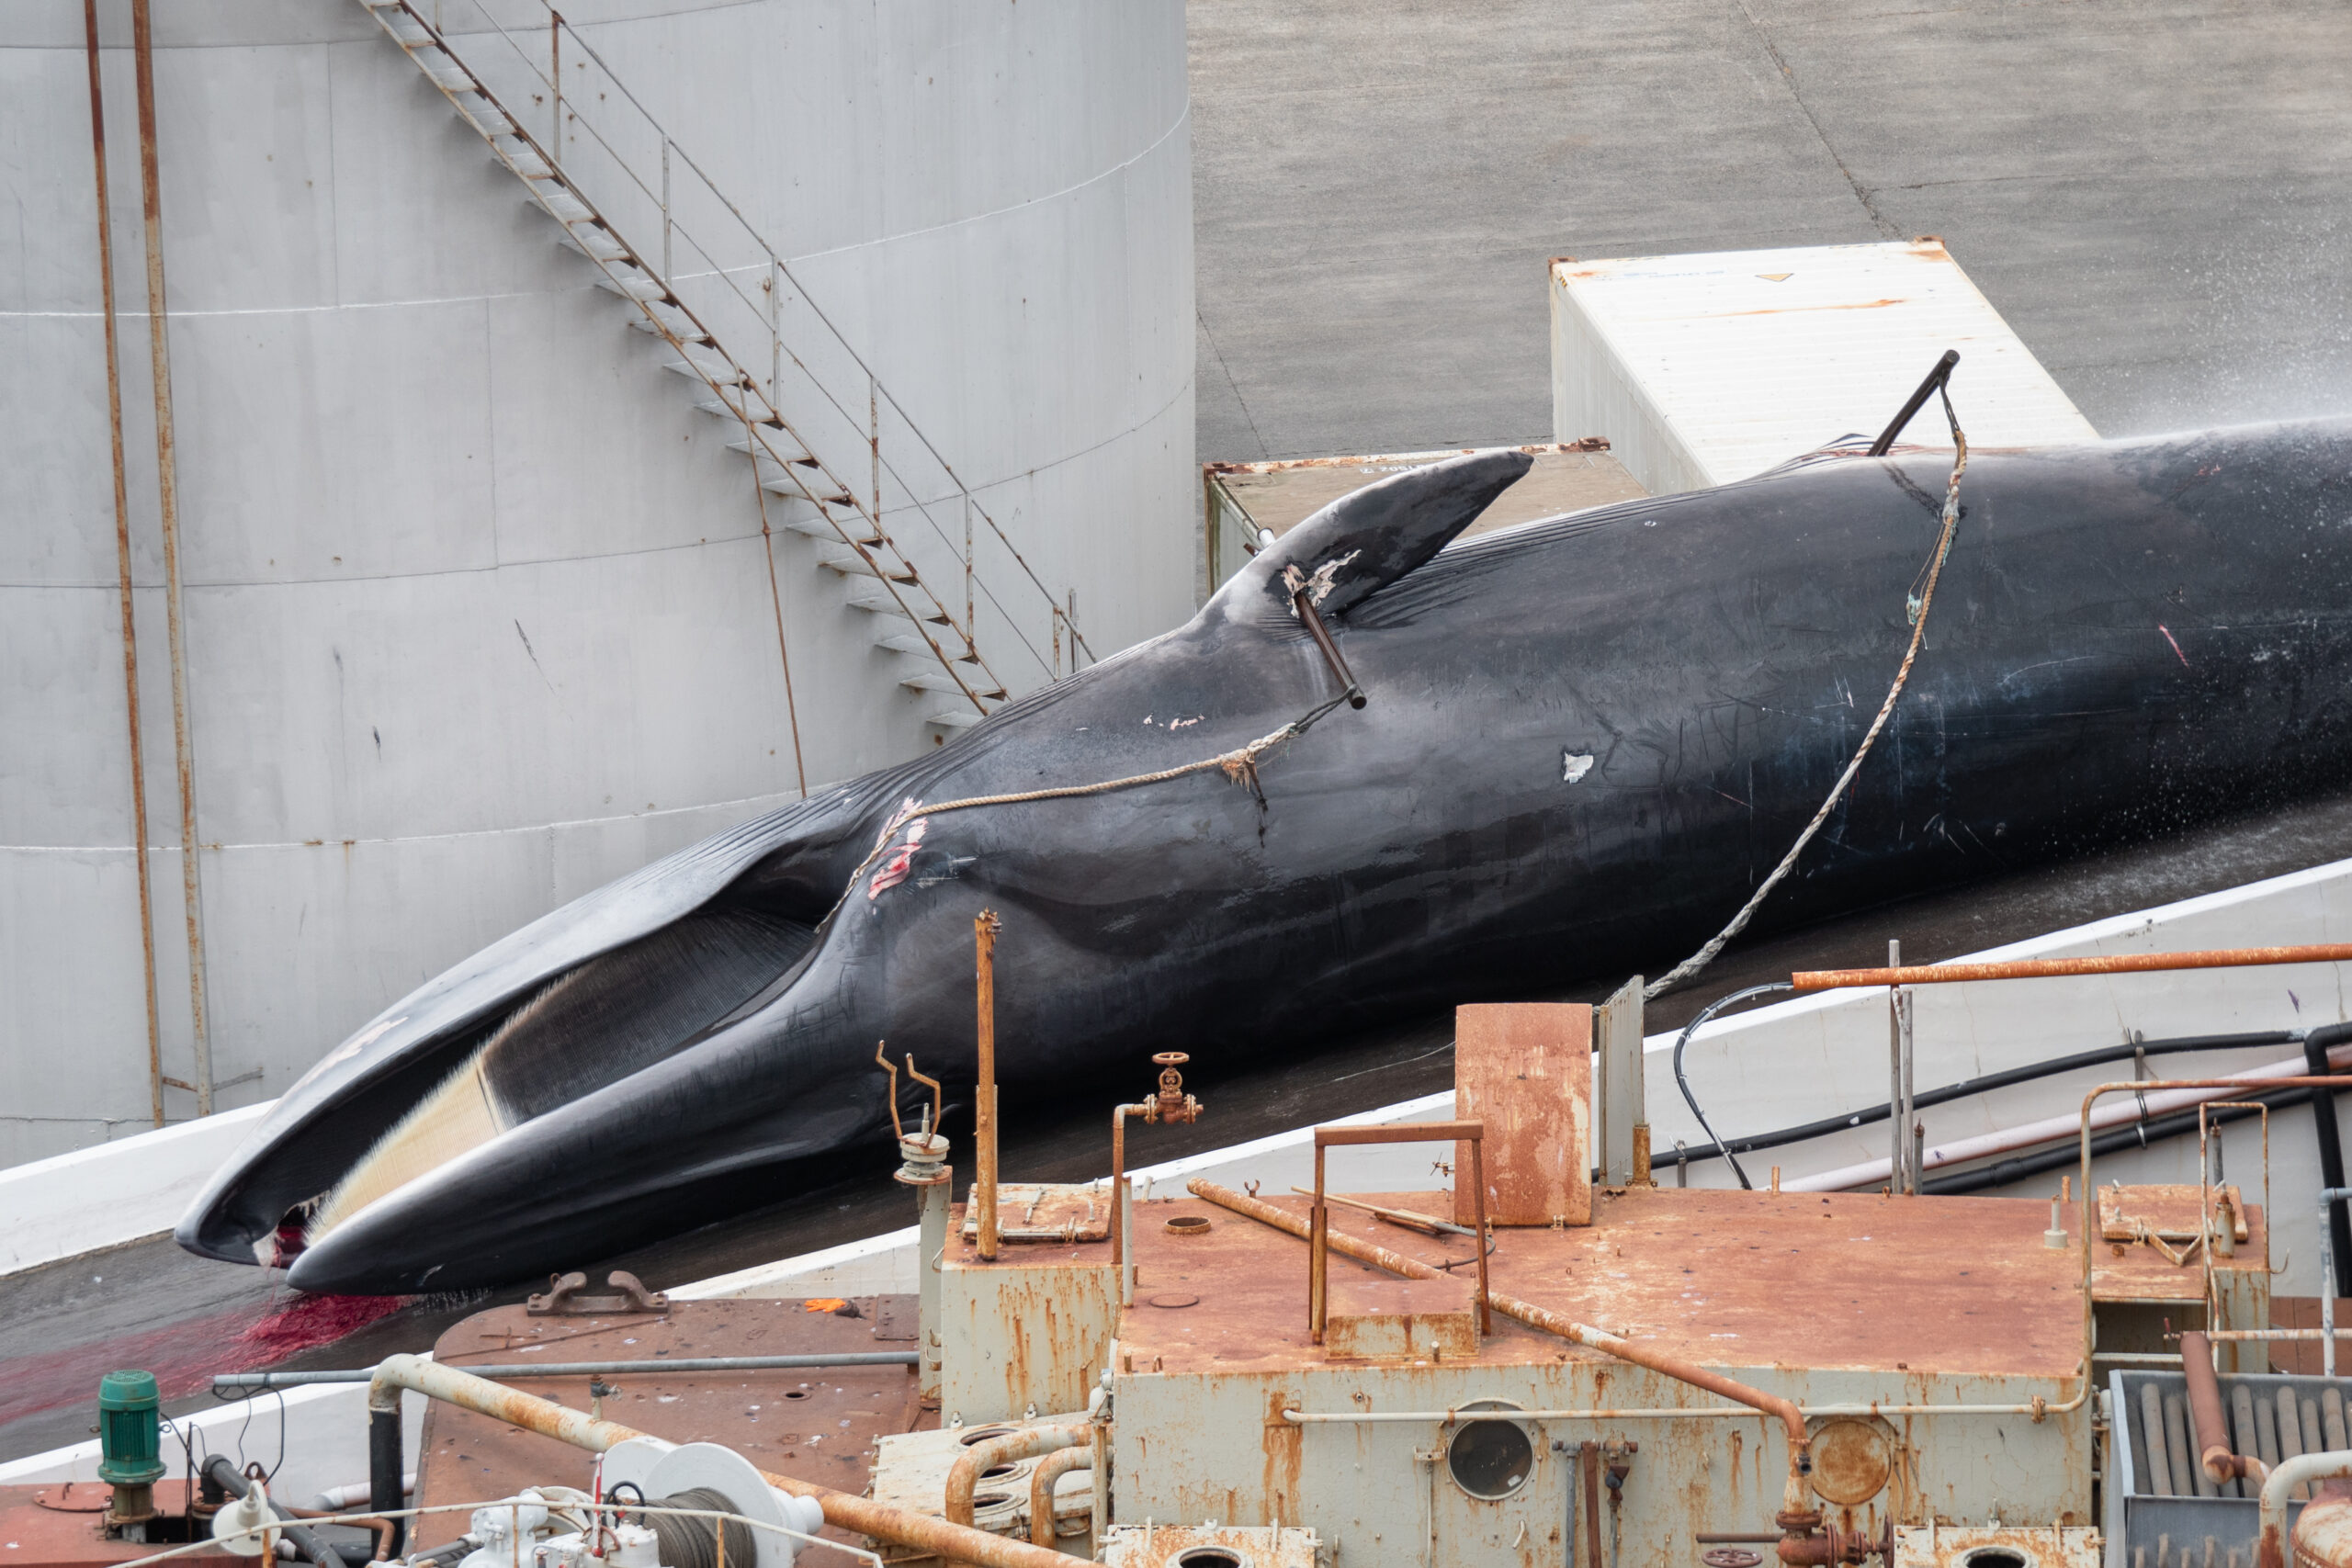 In Island wurden Finnwale getötet, obwohl sie vom Aussterben bedroht sind. ©️ Hard To Port